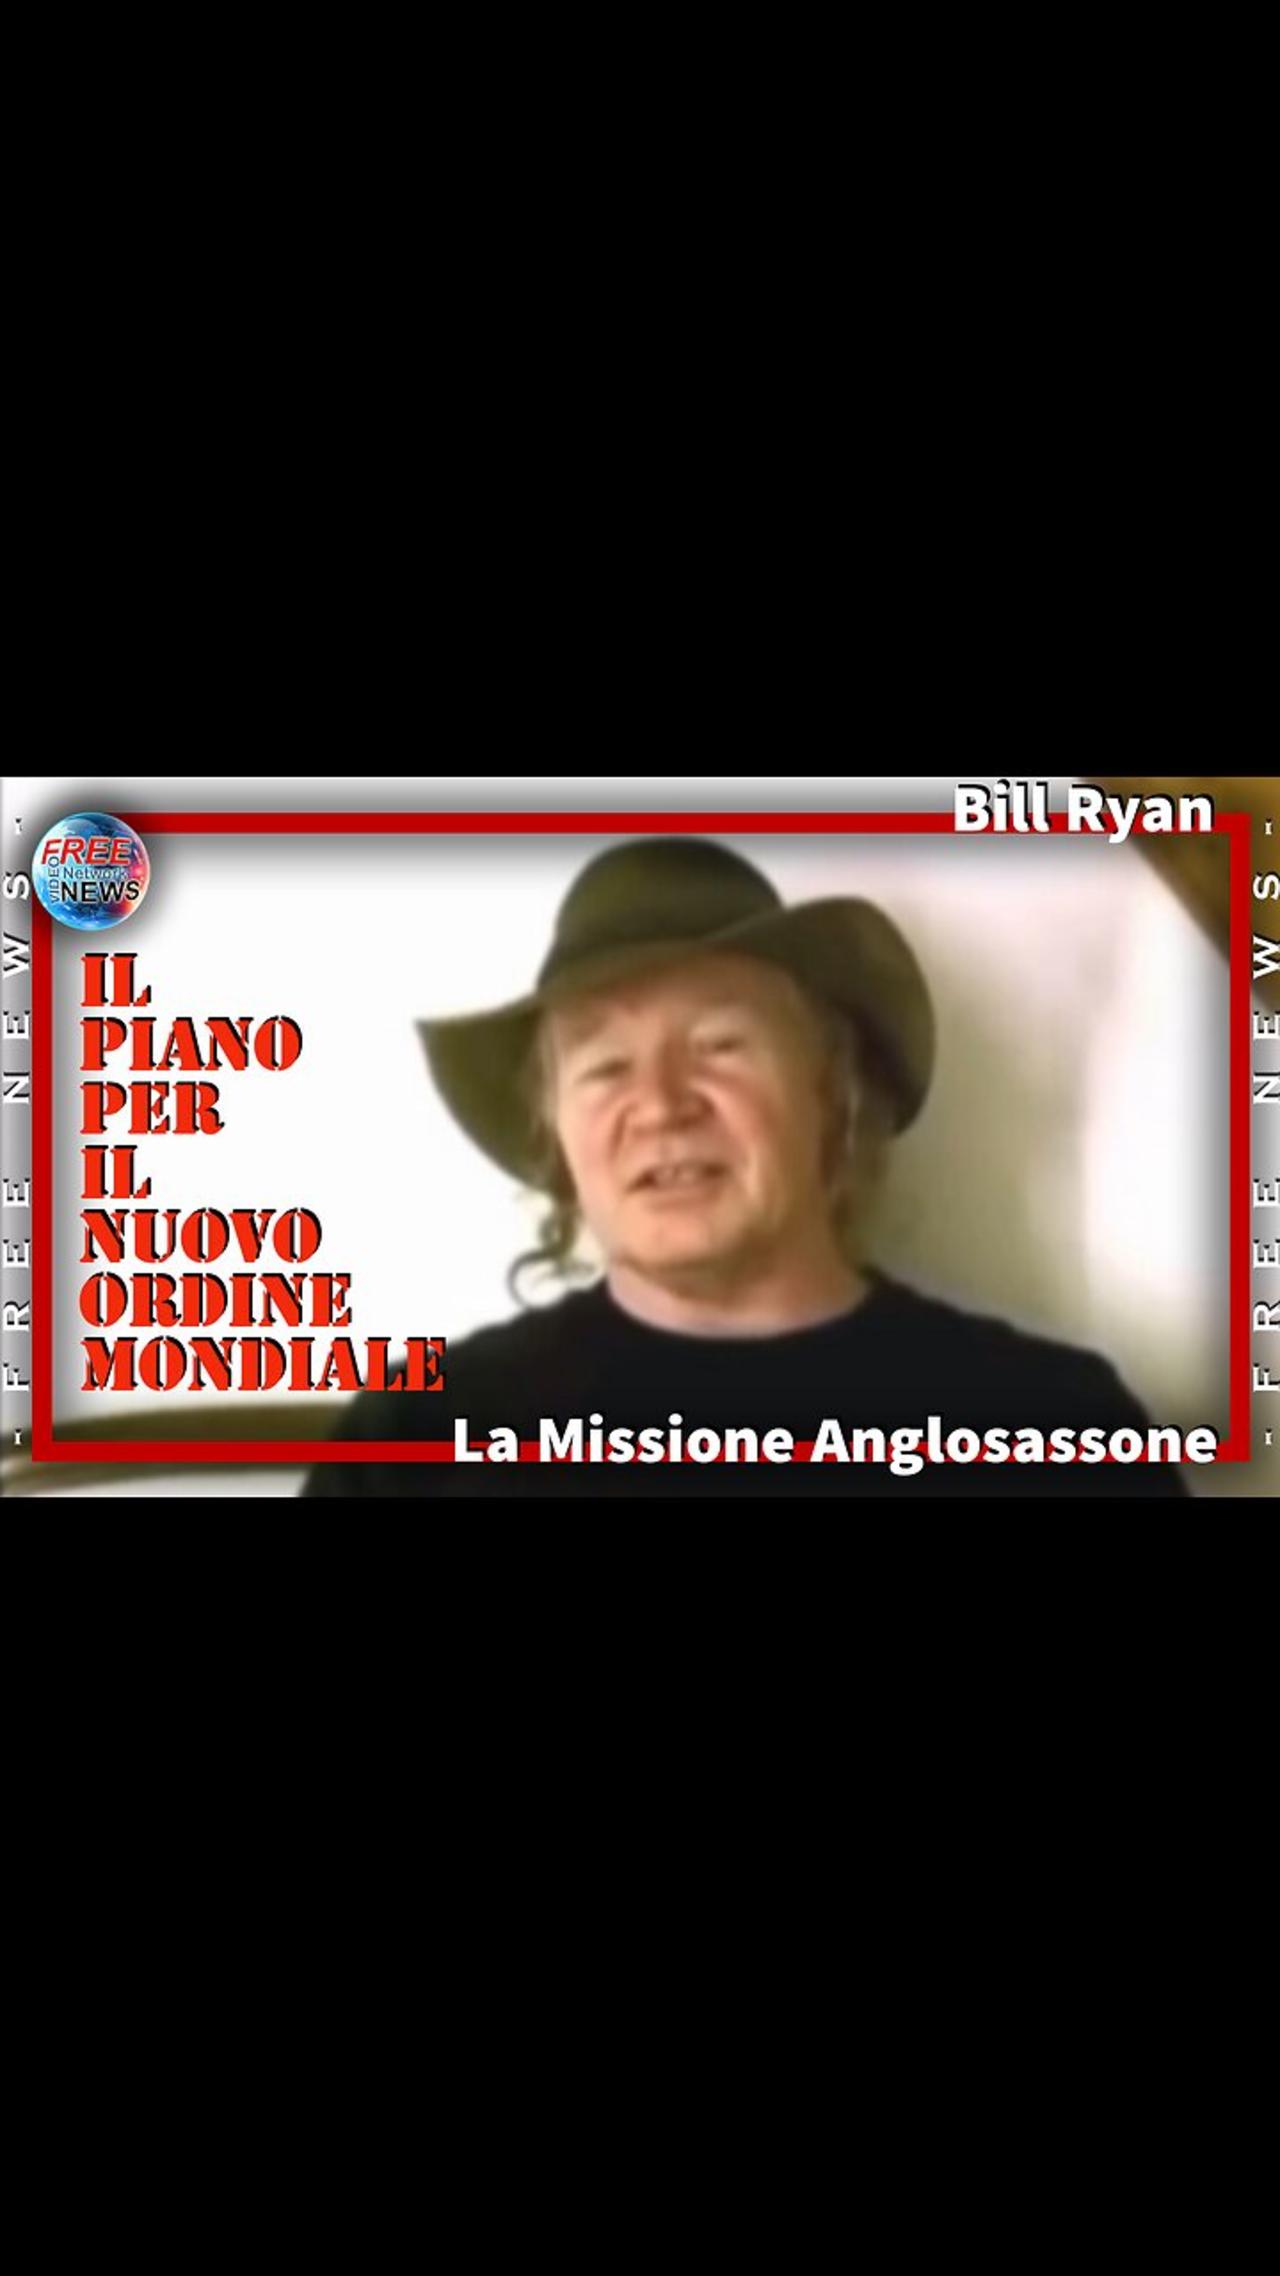 Bill Ryan e la Missione Anglosassone.